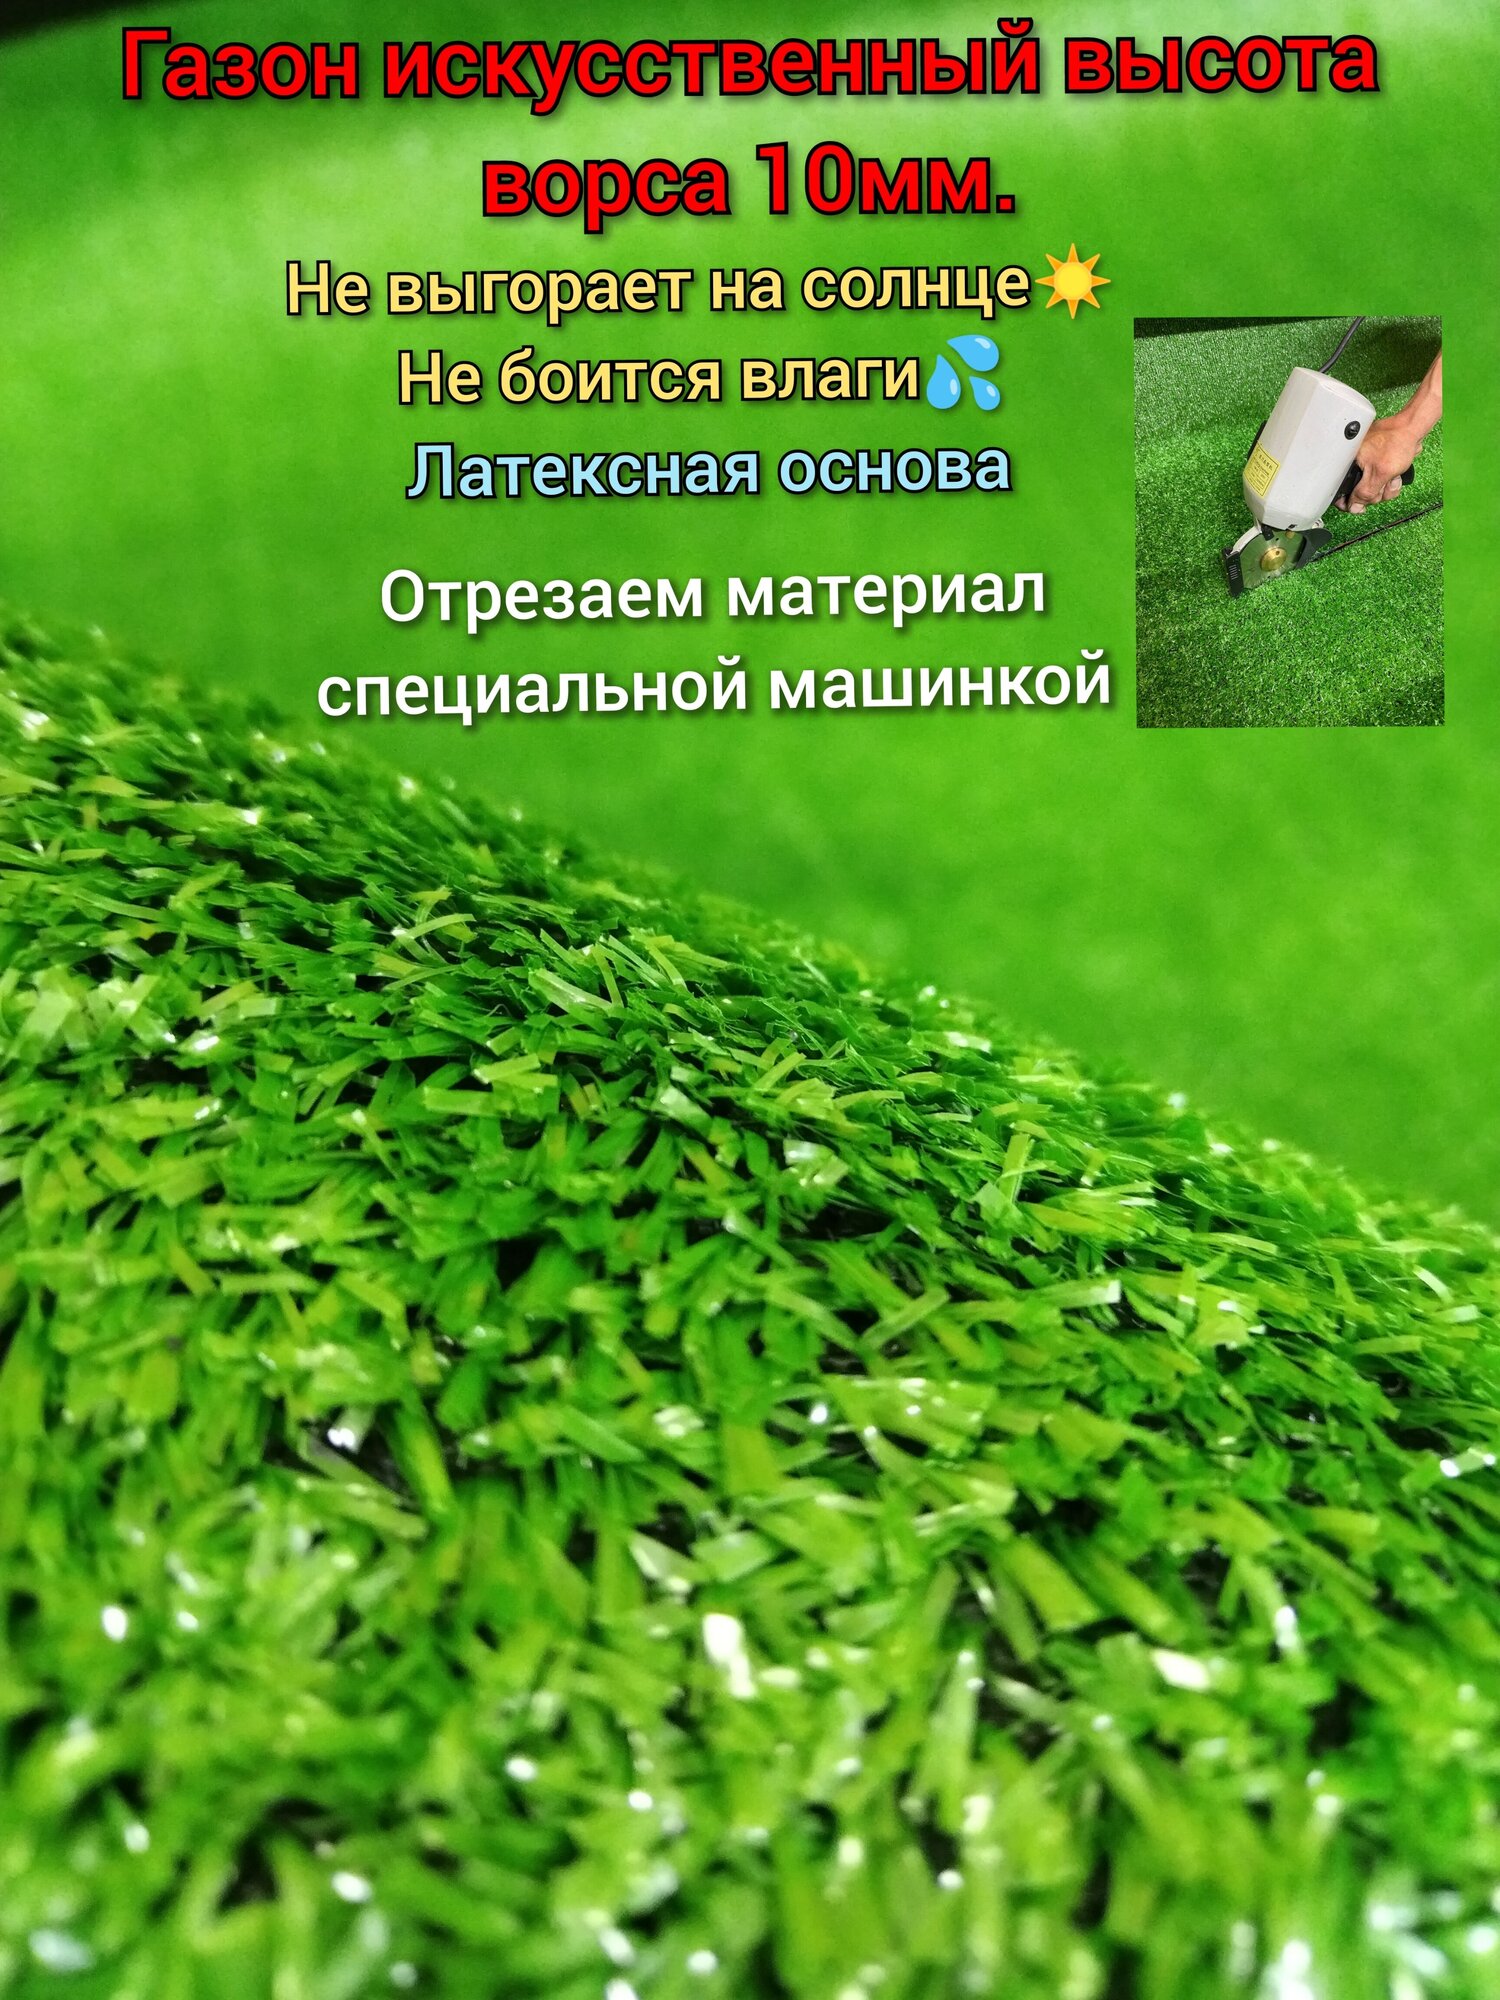 Искусственный газон 3х1 (высота ворса 10мм) Газон искусственный зеленый искусственная трава